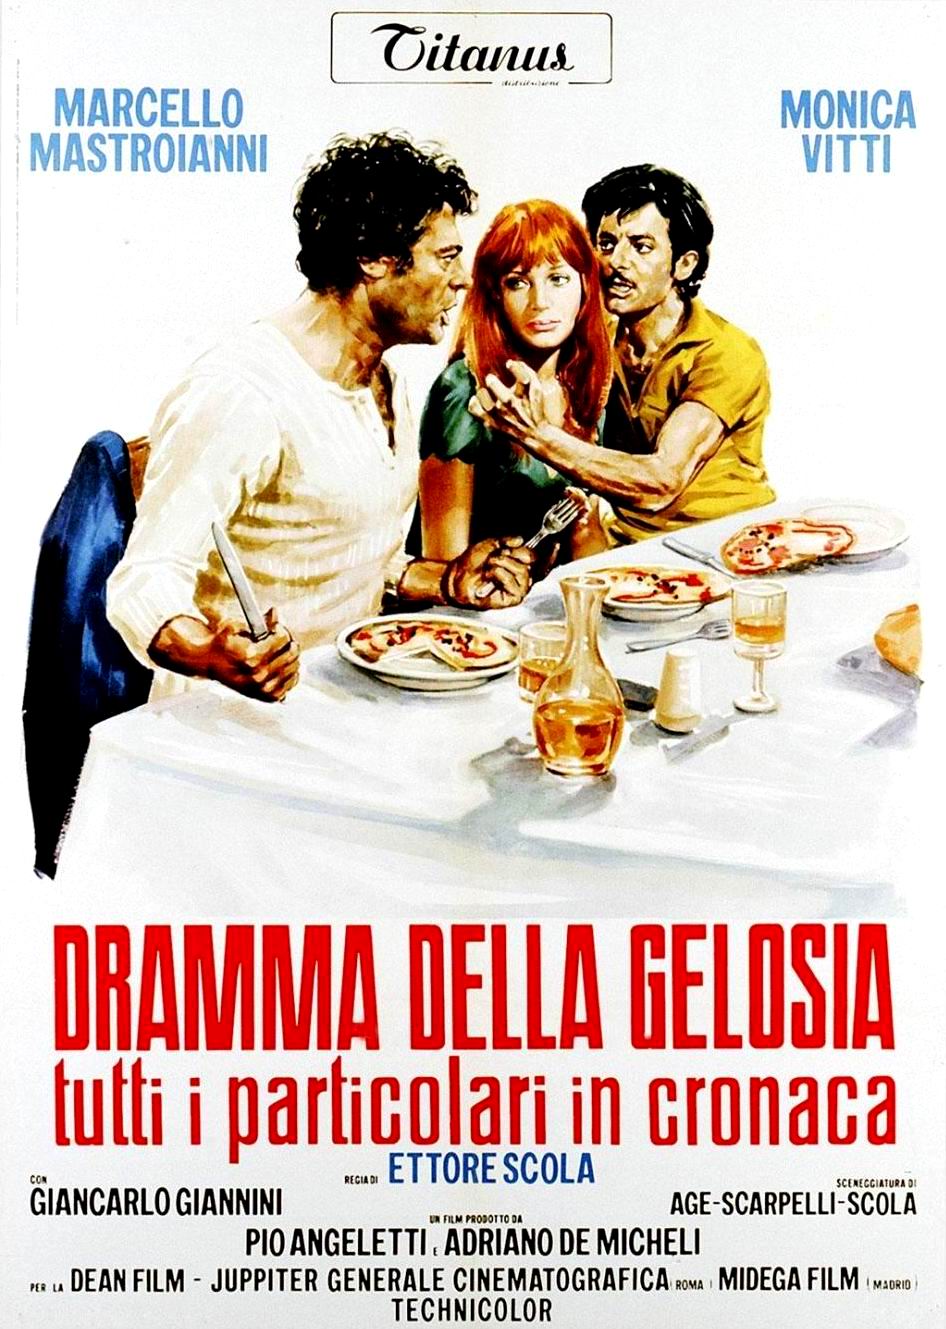 Drame de la jalousie (1969) Ettore Scola - Dramma della gelosia : Tutti i particolari in cronaca